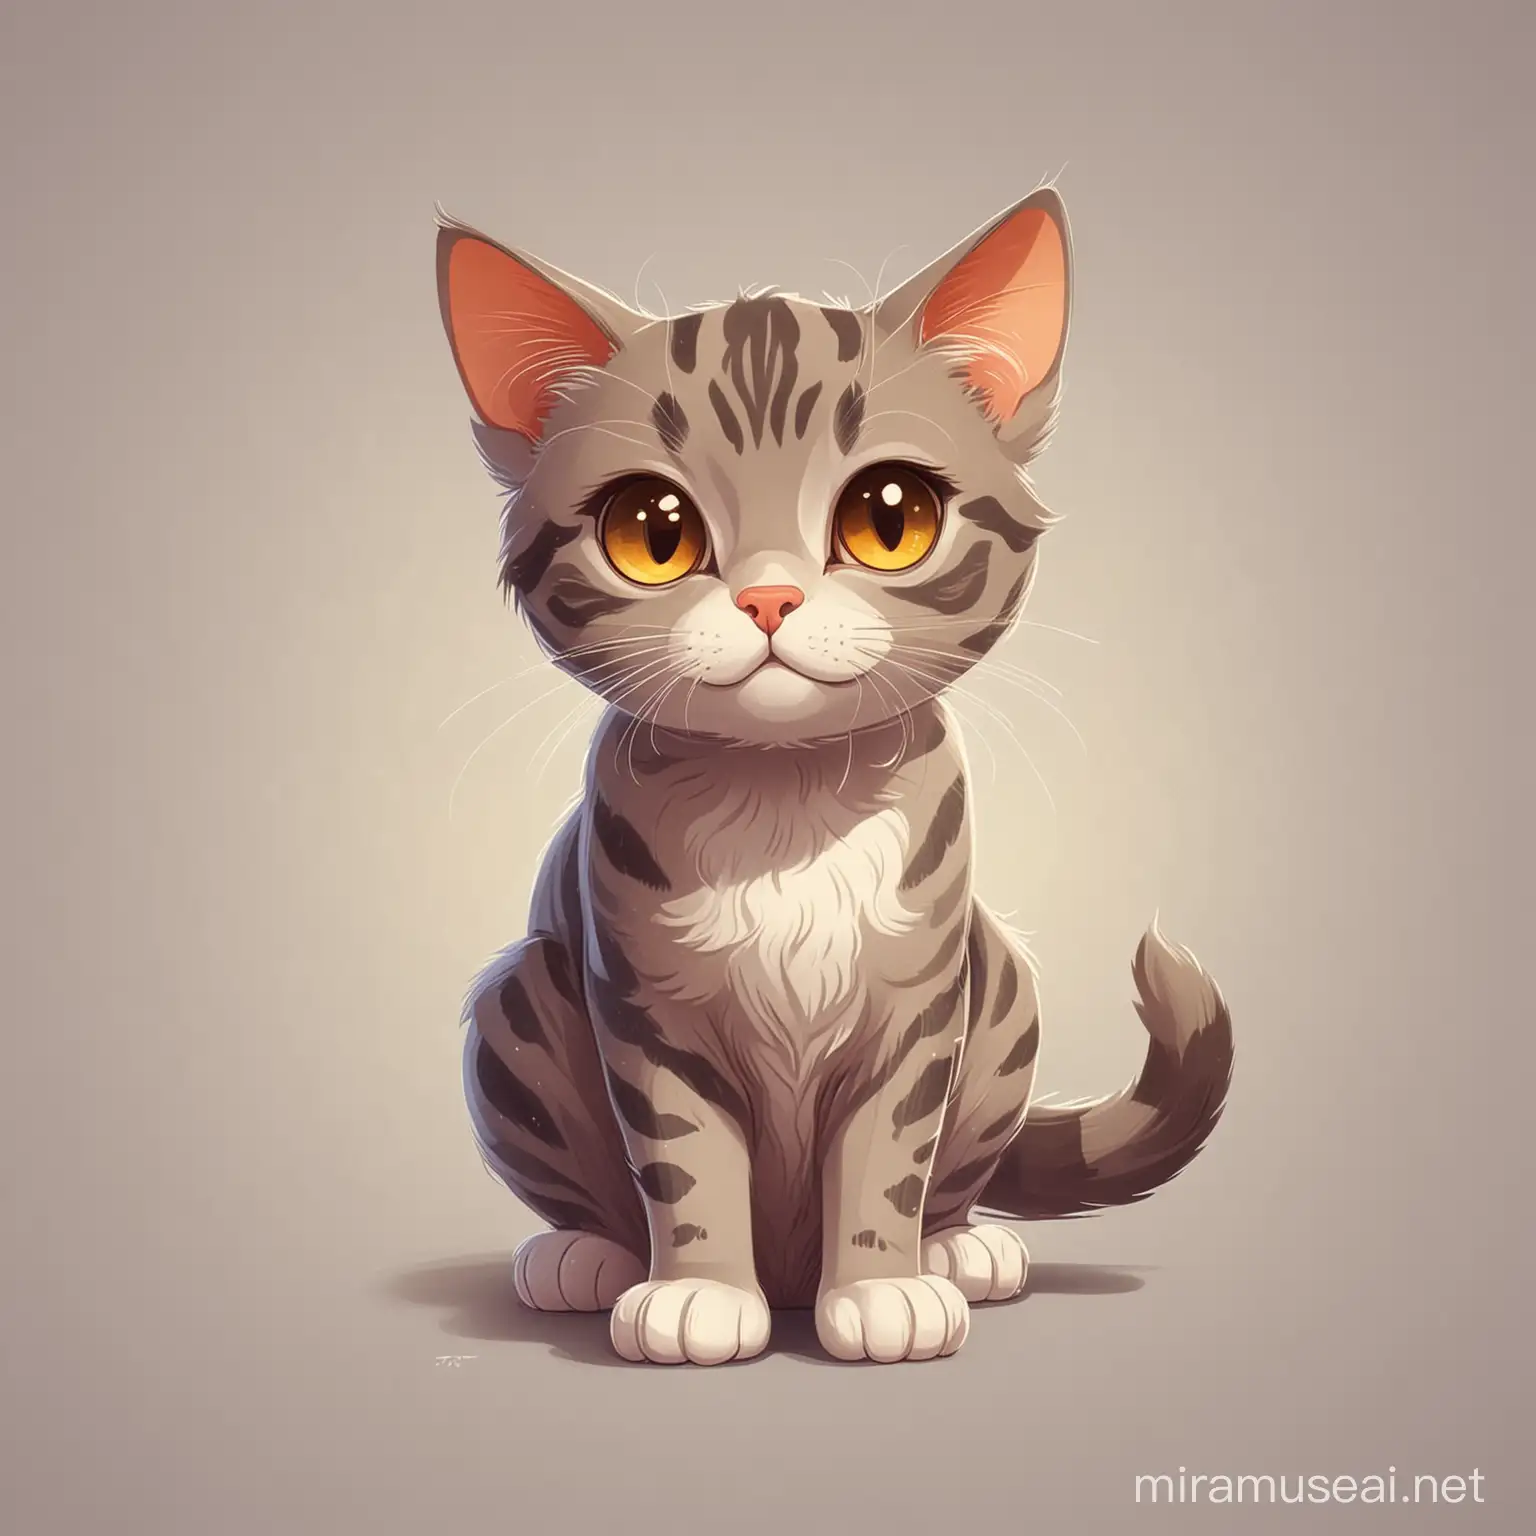 Cute stray cat, cartoon style